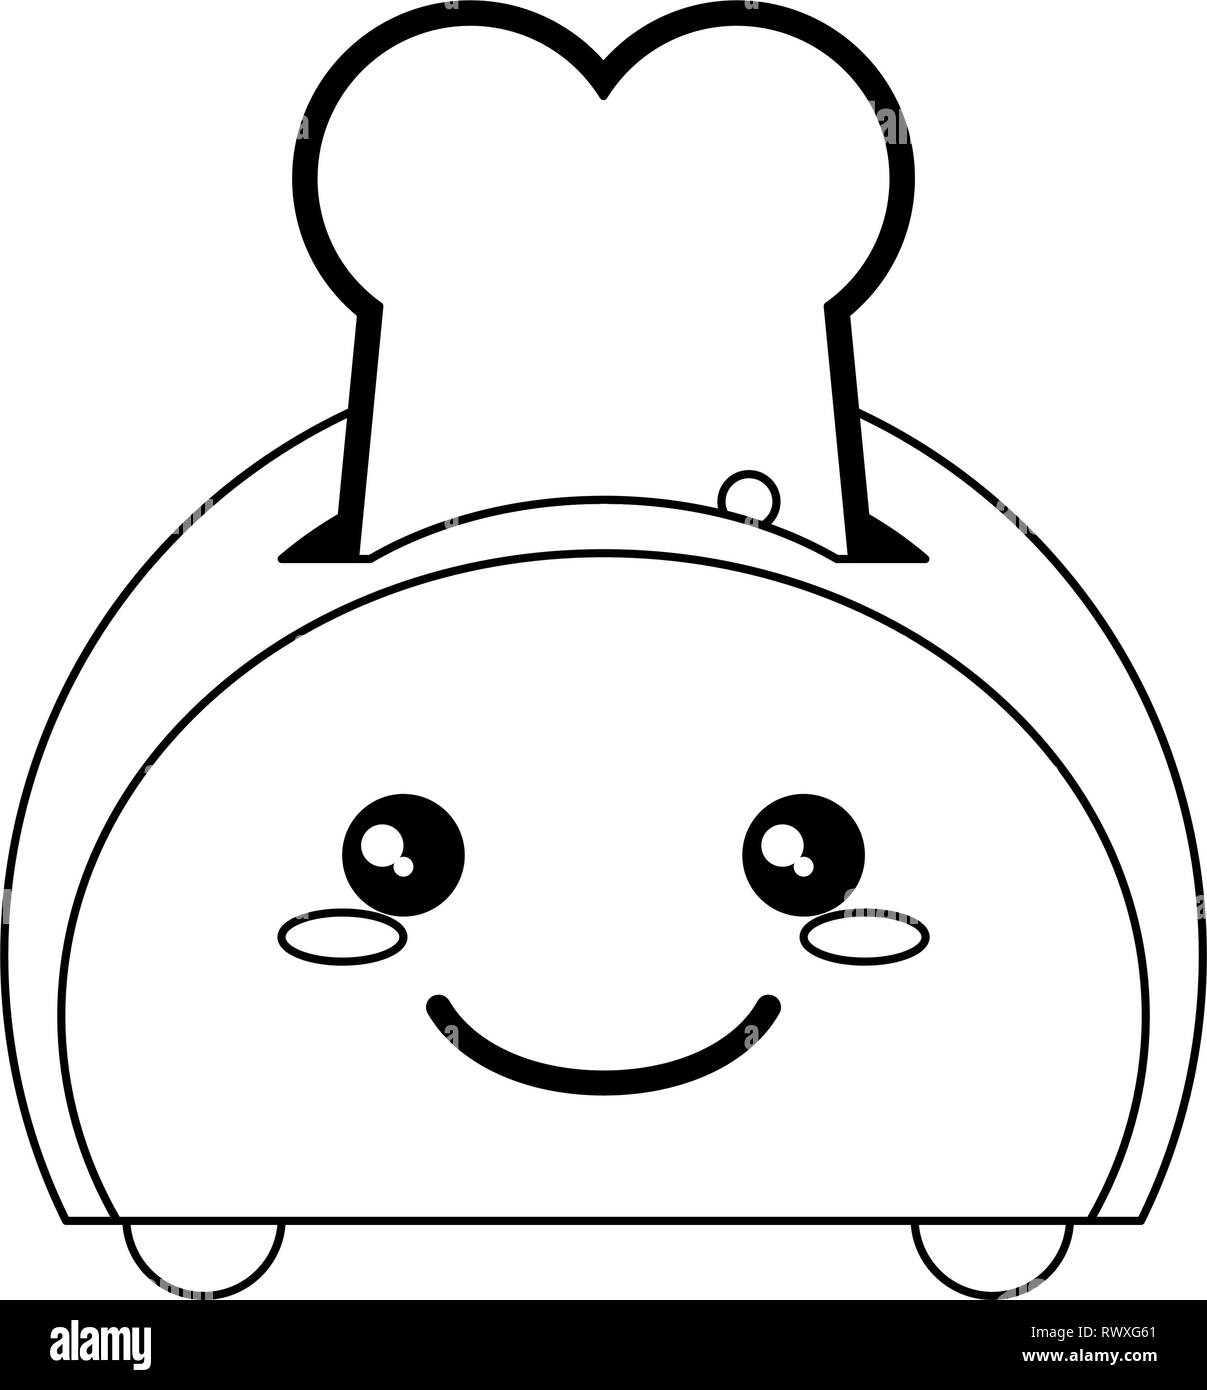 Brot im Toaster Küchengerät kawaii Karikatur in Schwarz und Weiß Stock Vektor